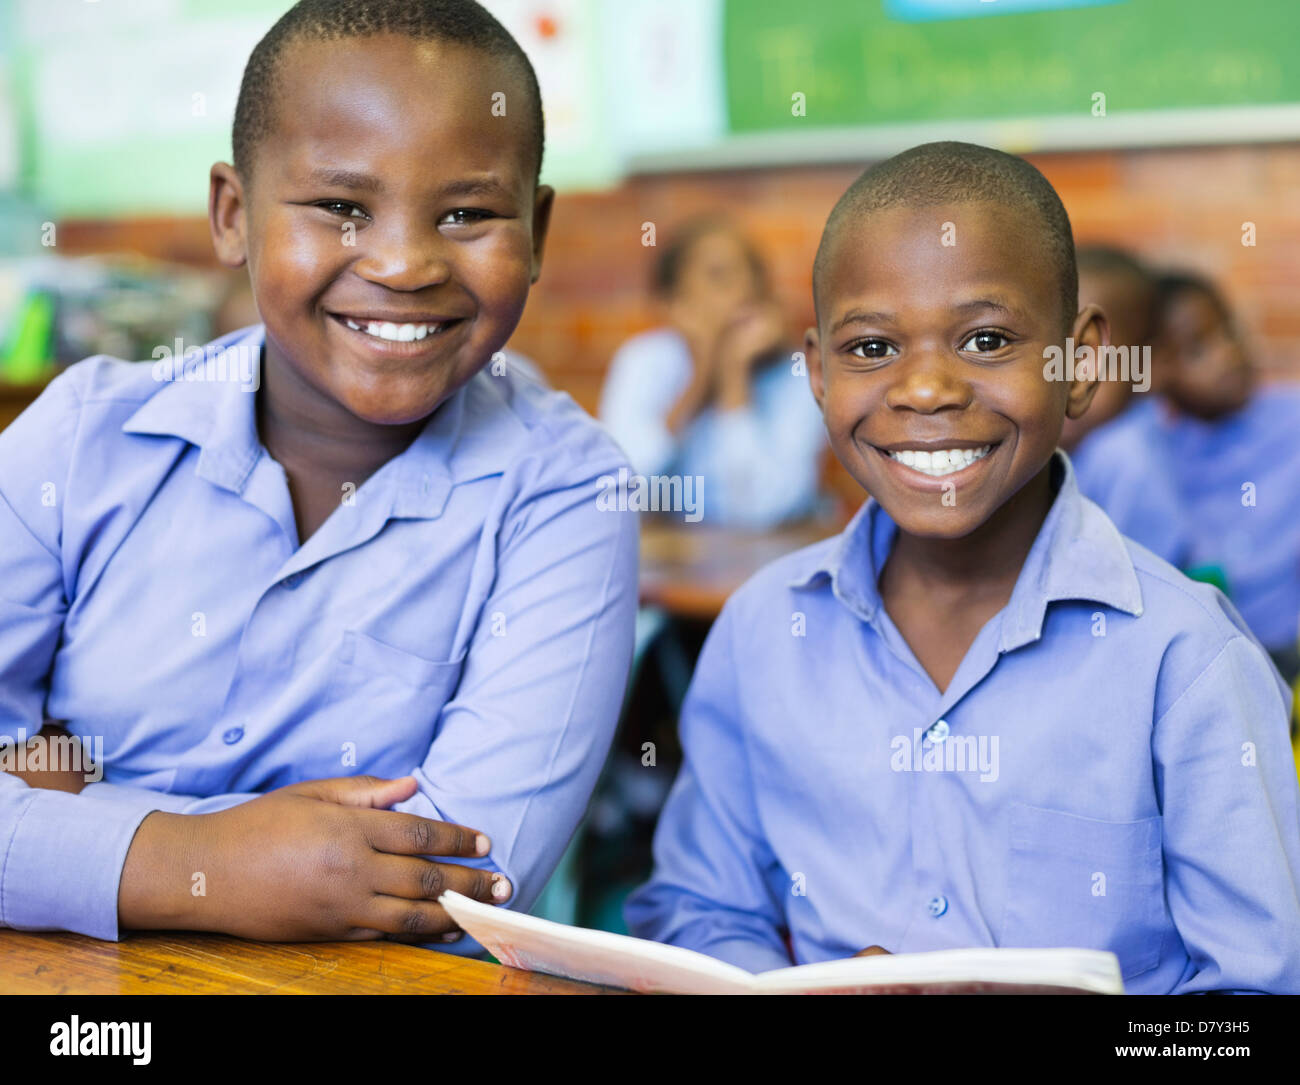 Les élèves smiling in class Banque D'Images